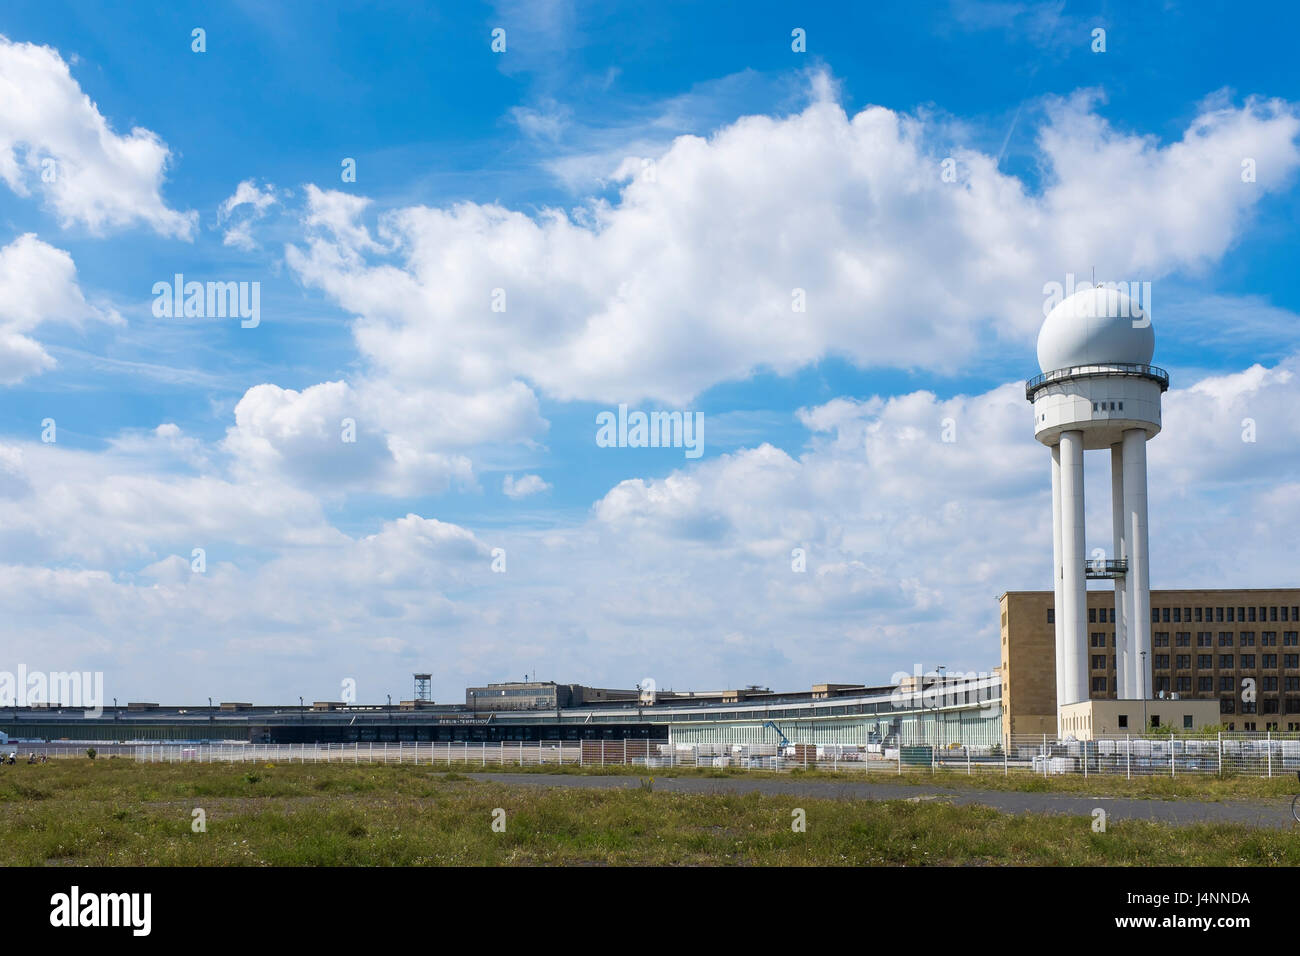 Berlino è una volta iconico Tempelhof Airport è mettere a buon uso. Il terminale come un n i richiedenti asilo rifugio, le vie di corsa come un parco. Berlino, Germania Foto Stock